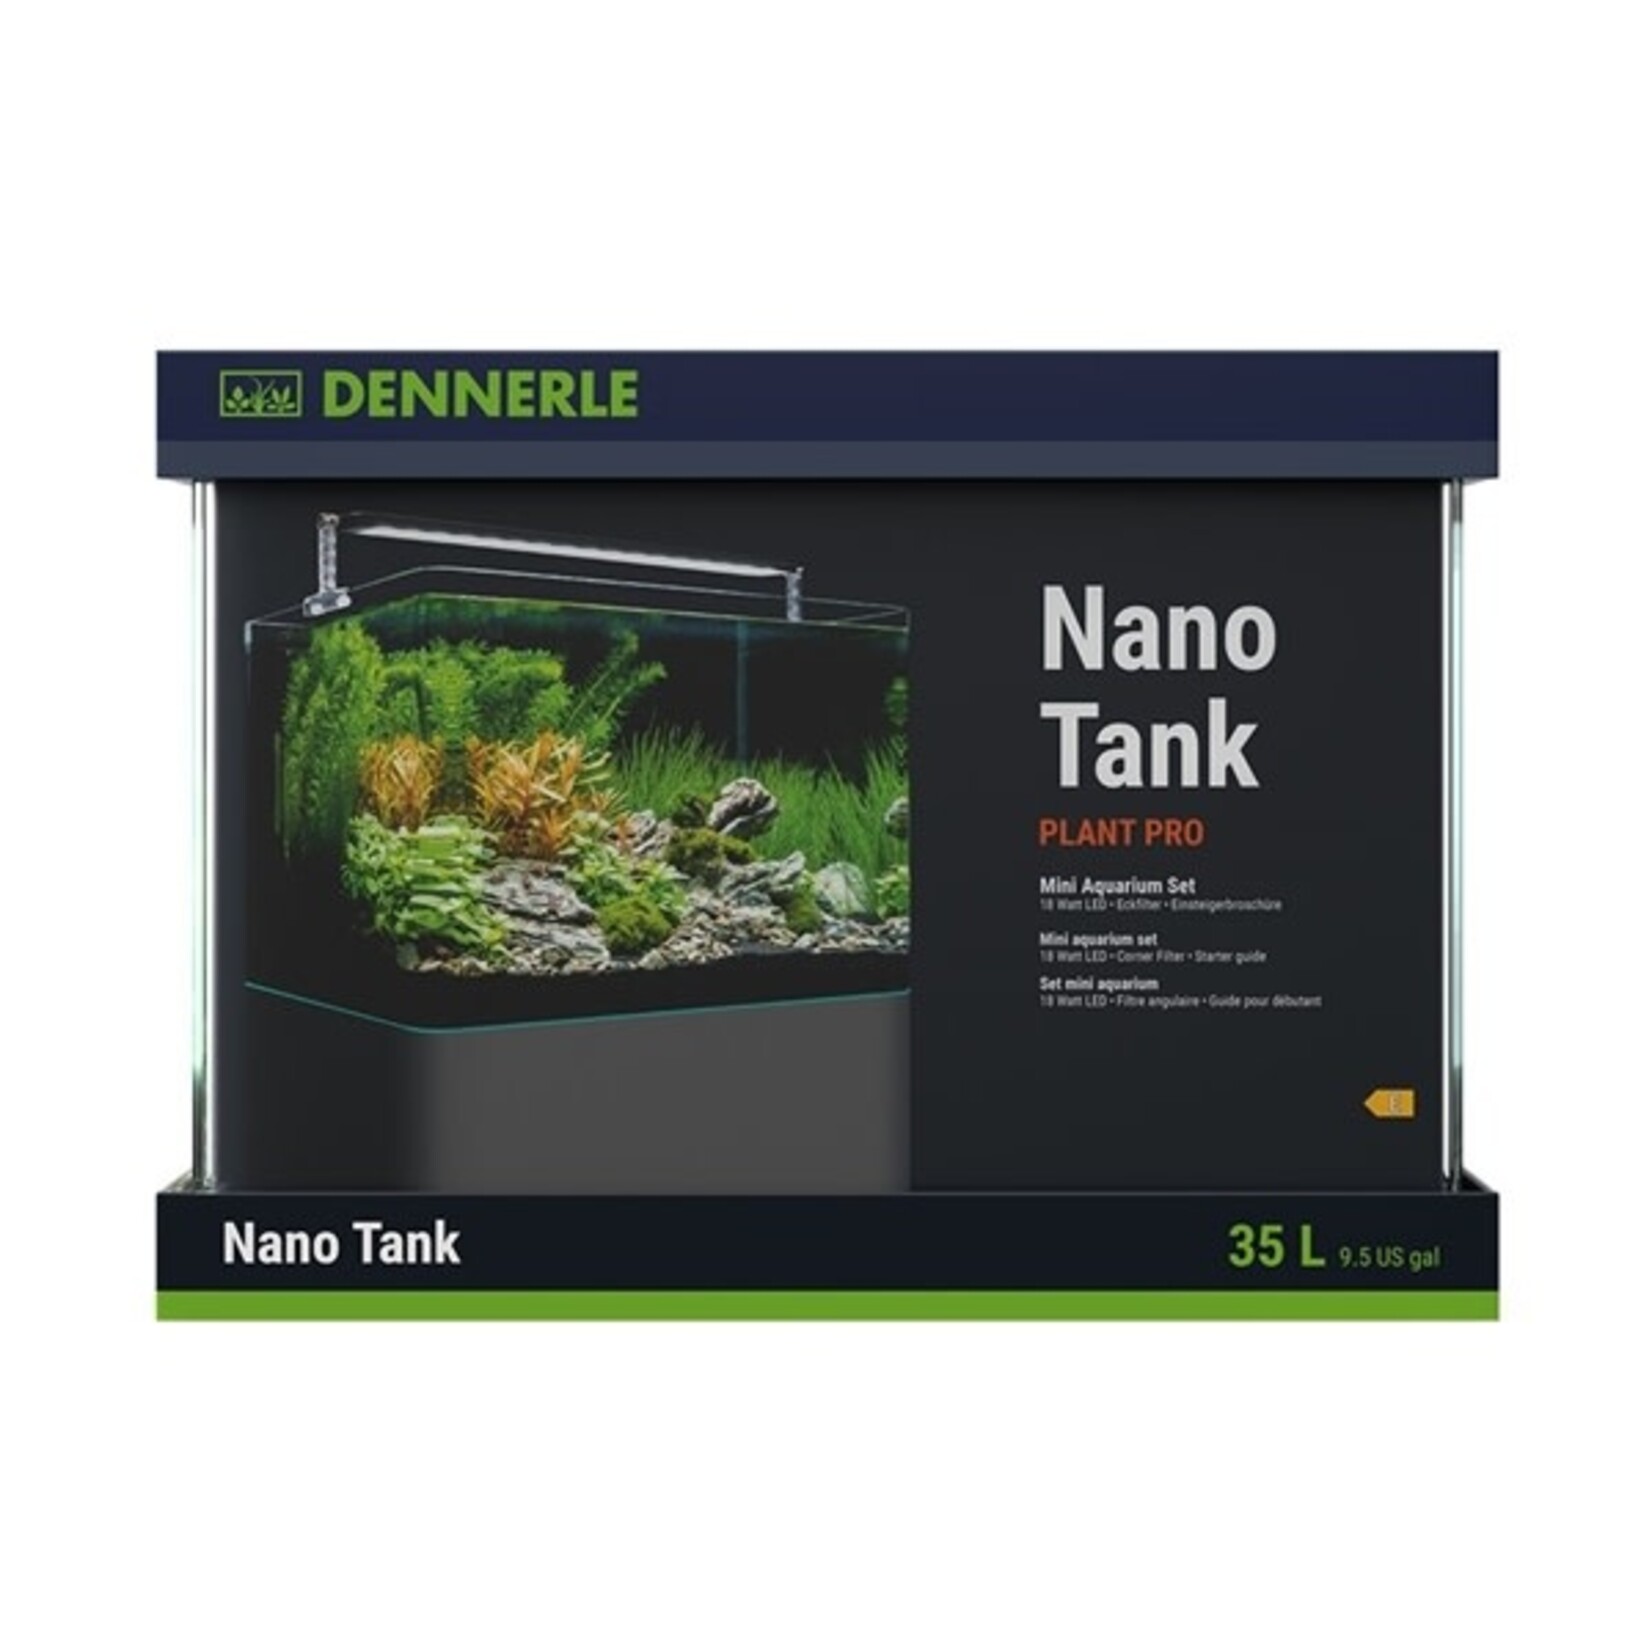 Dennerle nano tank  nano tank plant pro 35 l